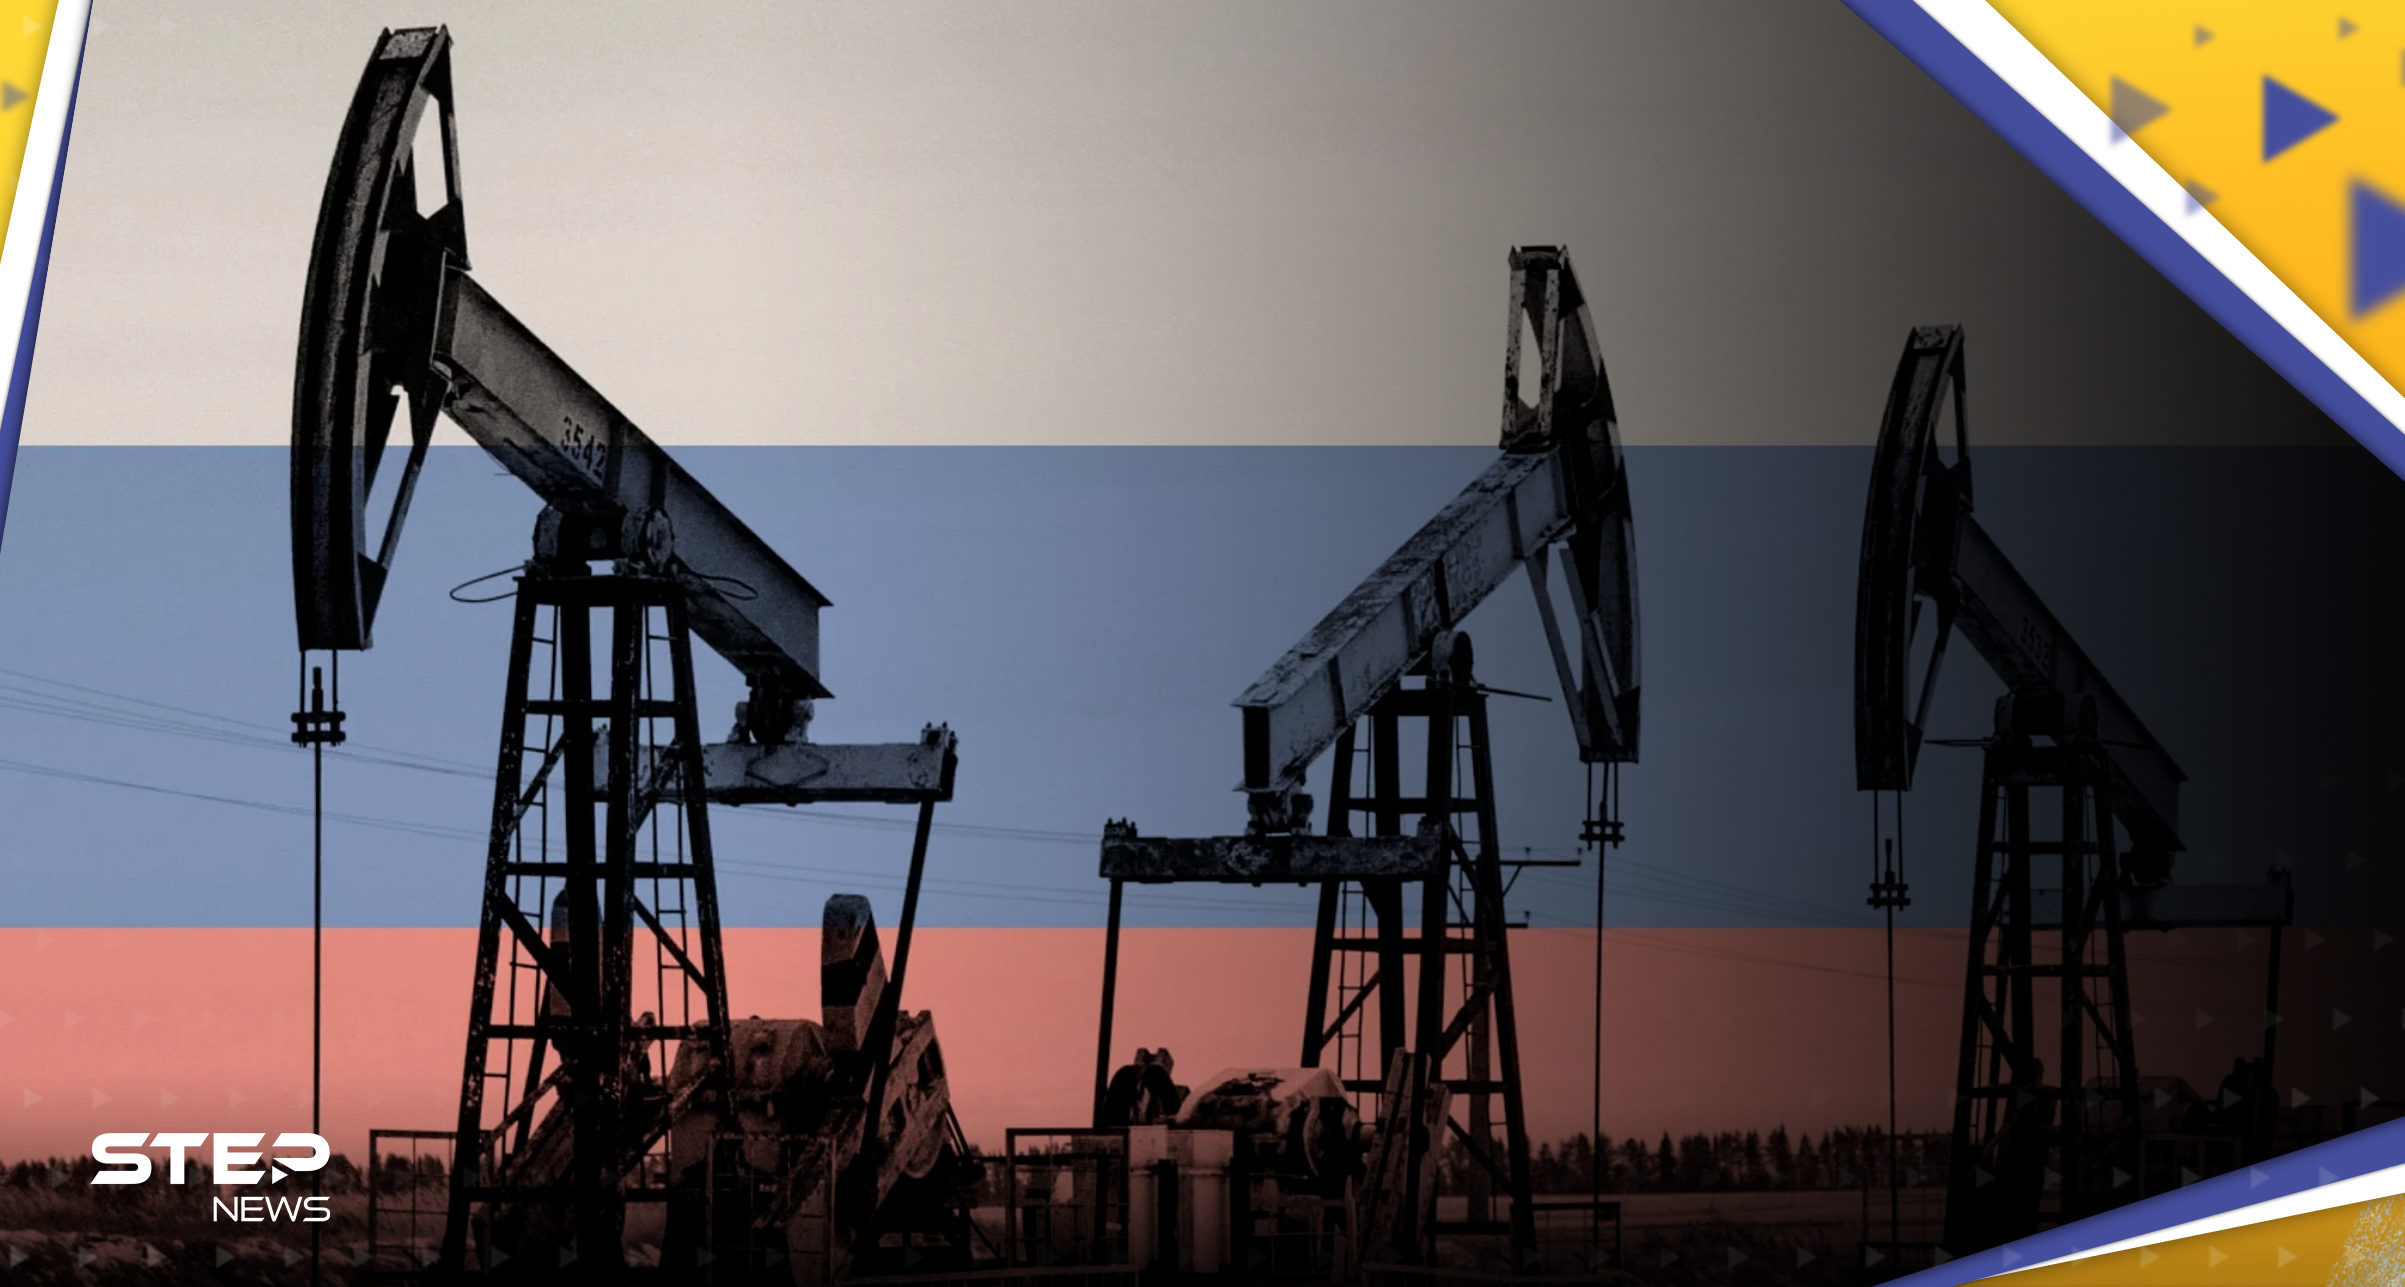 بعيداً عن العقوبات.. النفط الروسي يصل إلى أوروبا من طرف ثالث